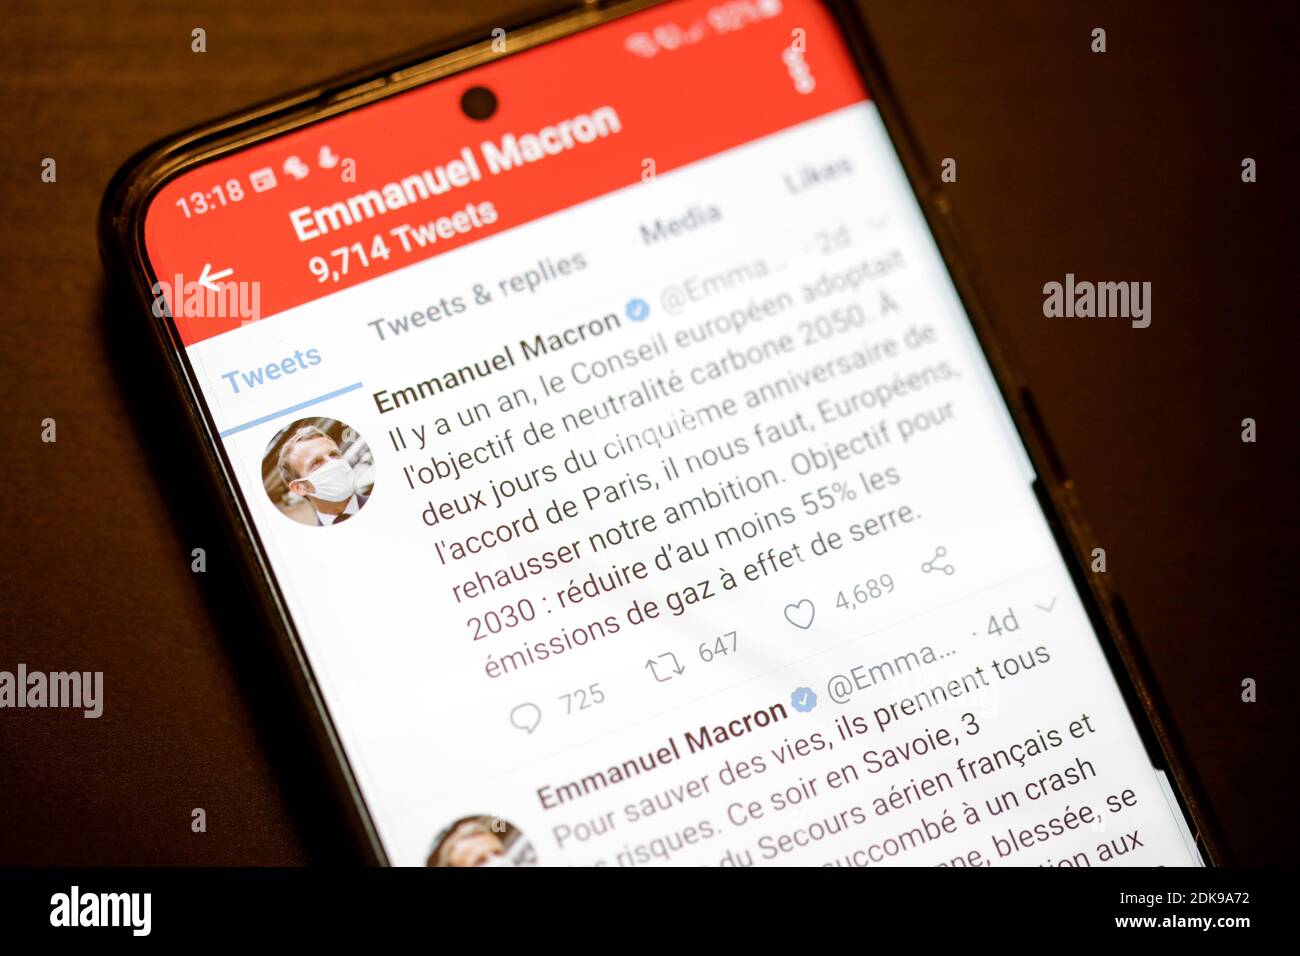 Bukarest, Rumänien - 13. Dezember 2020: Details mit dem Twitter-Account von Emmanuel Macron auf einem mobilen Bildschirm. Stockfoto